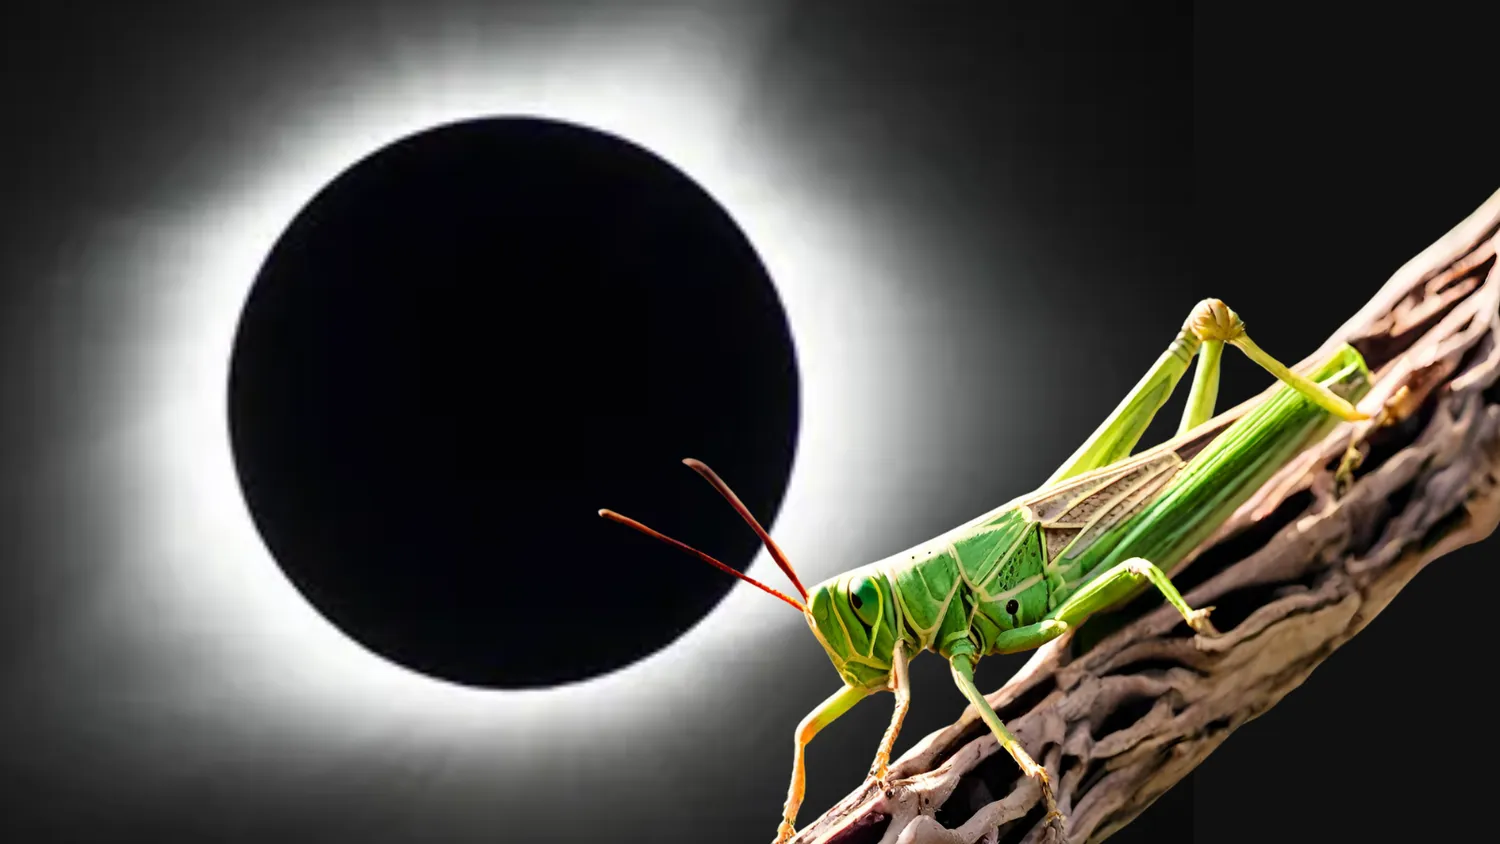 Eine Illustration zeigt einen Grashüpfer auf einem Ast mit einer totalen Sonnenfinsternis im Hintergrund.